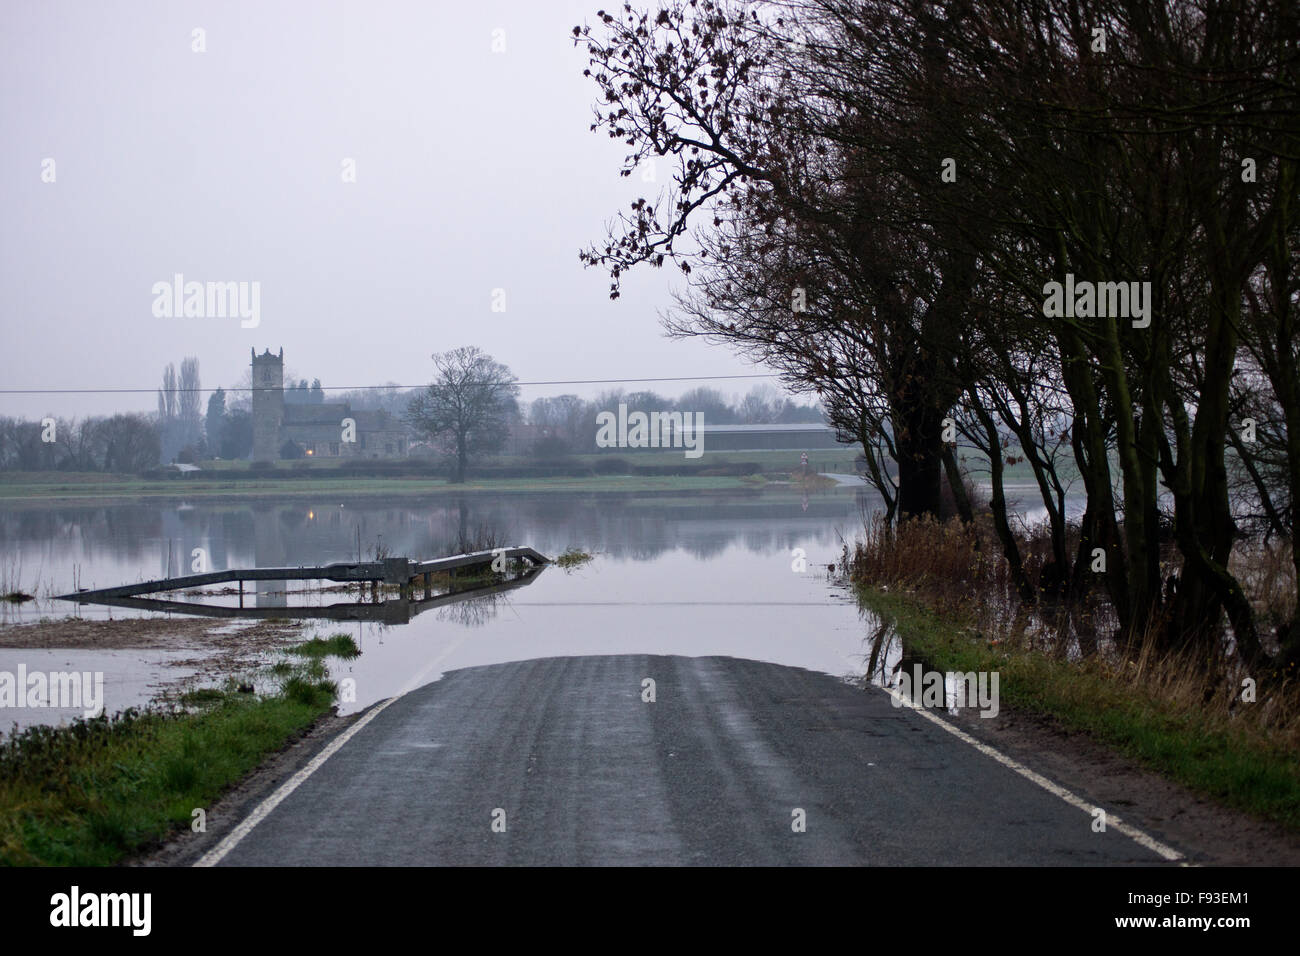 North Yorkshire, UK. 13 Décembre, 2015. Météo France, les inondations dans le Nord du Yorkshire 13/12/2015 Crédit : chris mcloughlin/Alamy Live News Banque D'Images